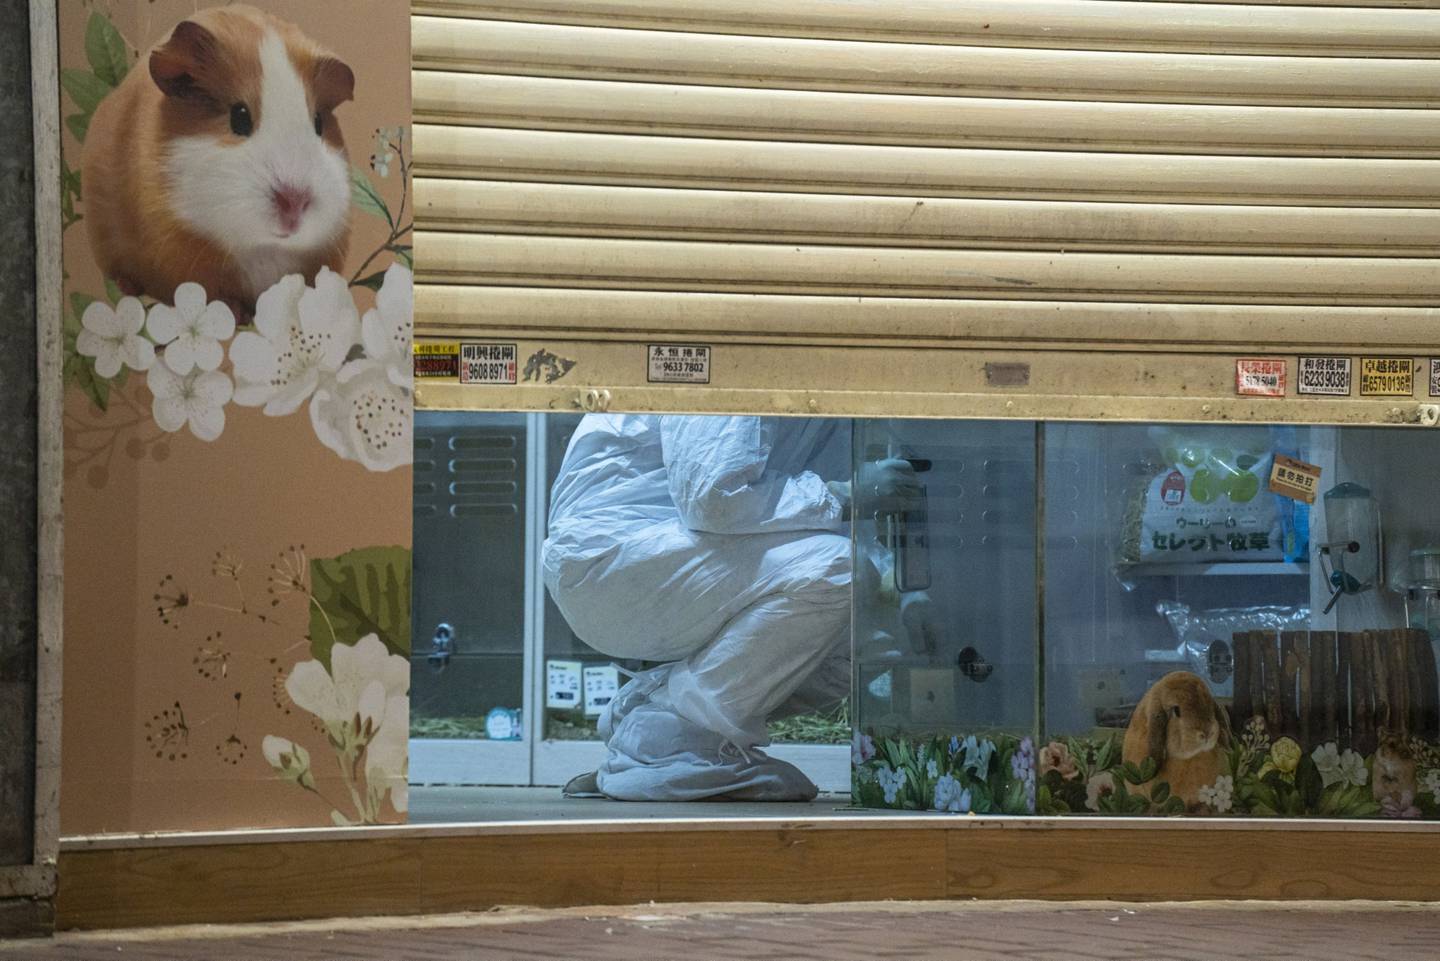 Pet shop foi o local em que foram identificados os casos de covid em hamsters